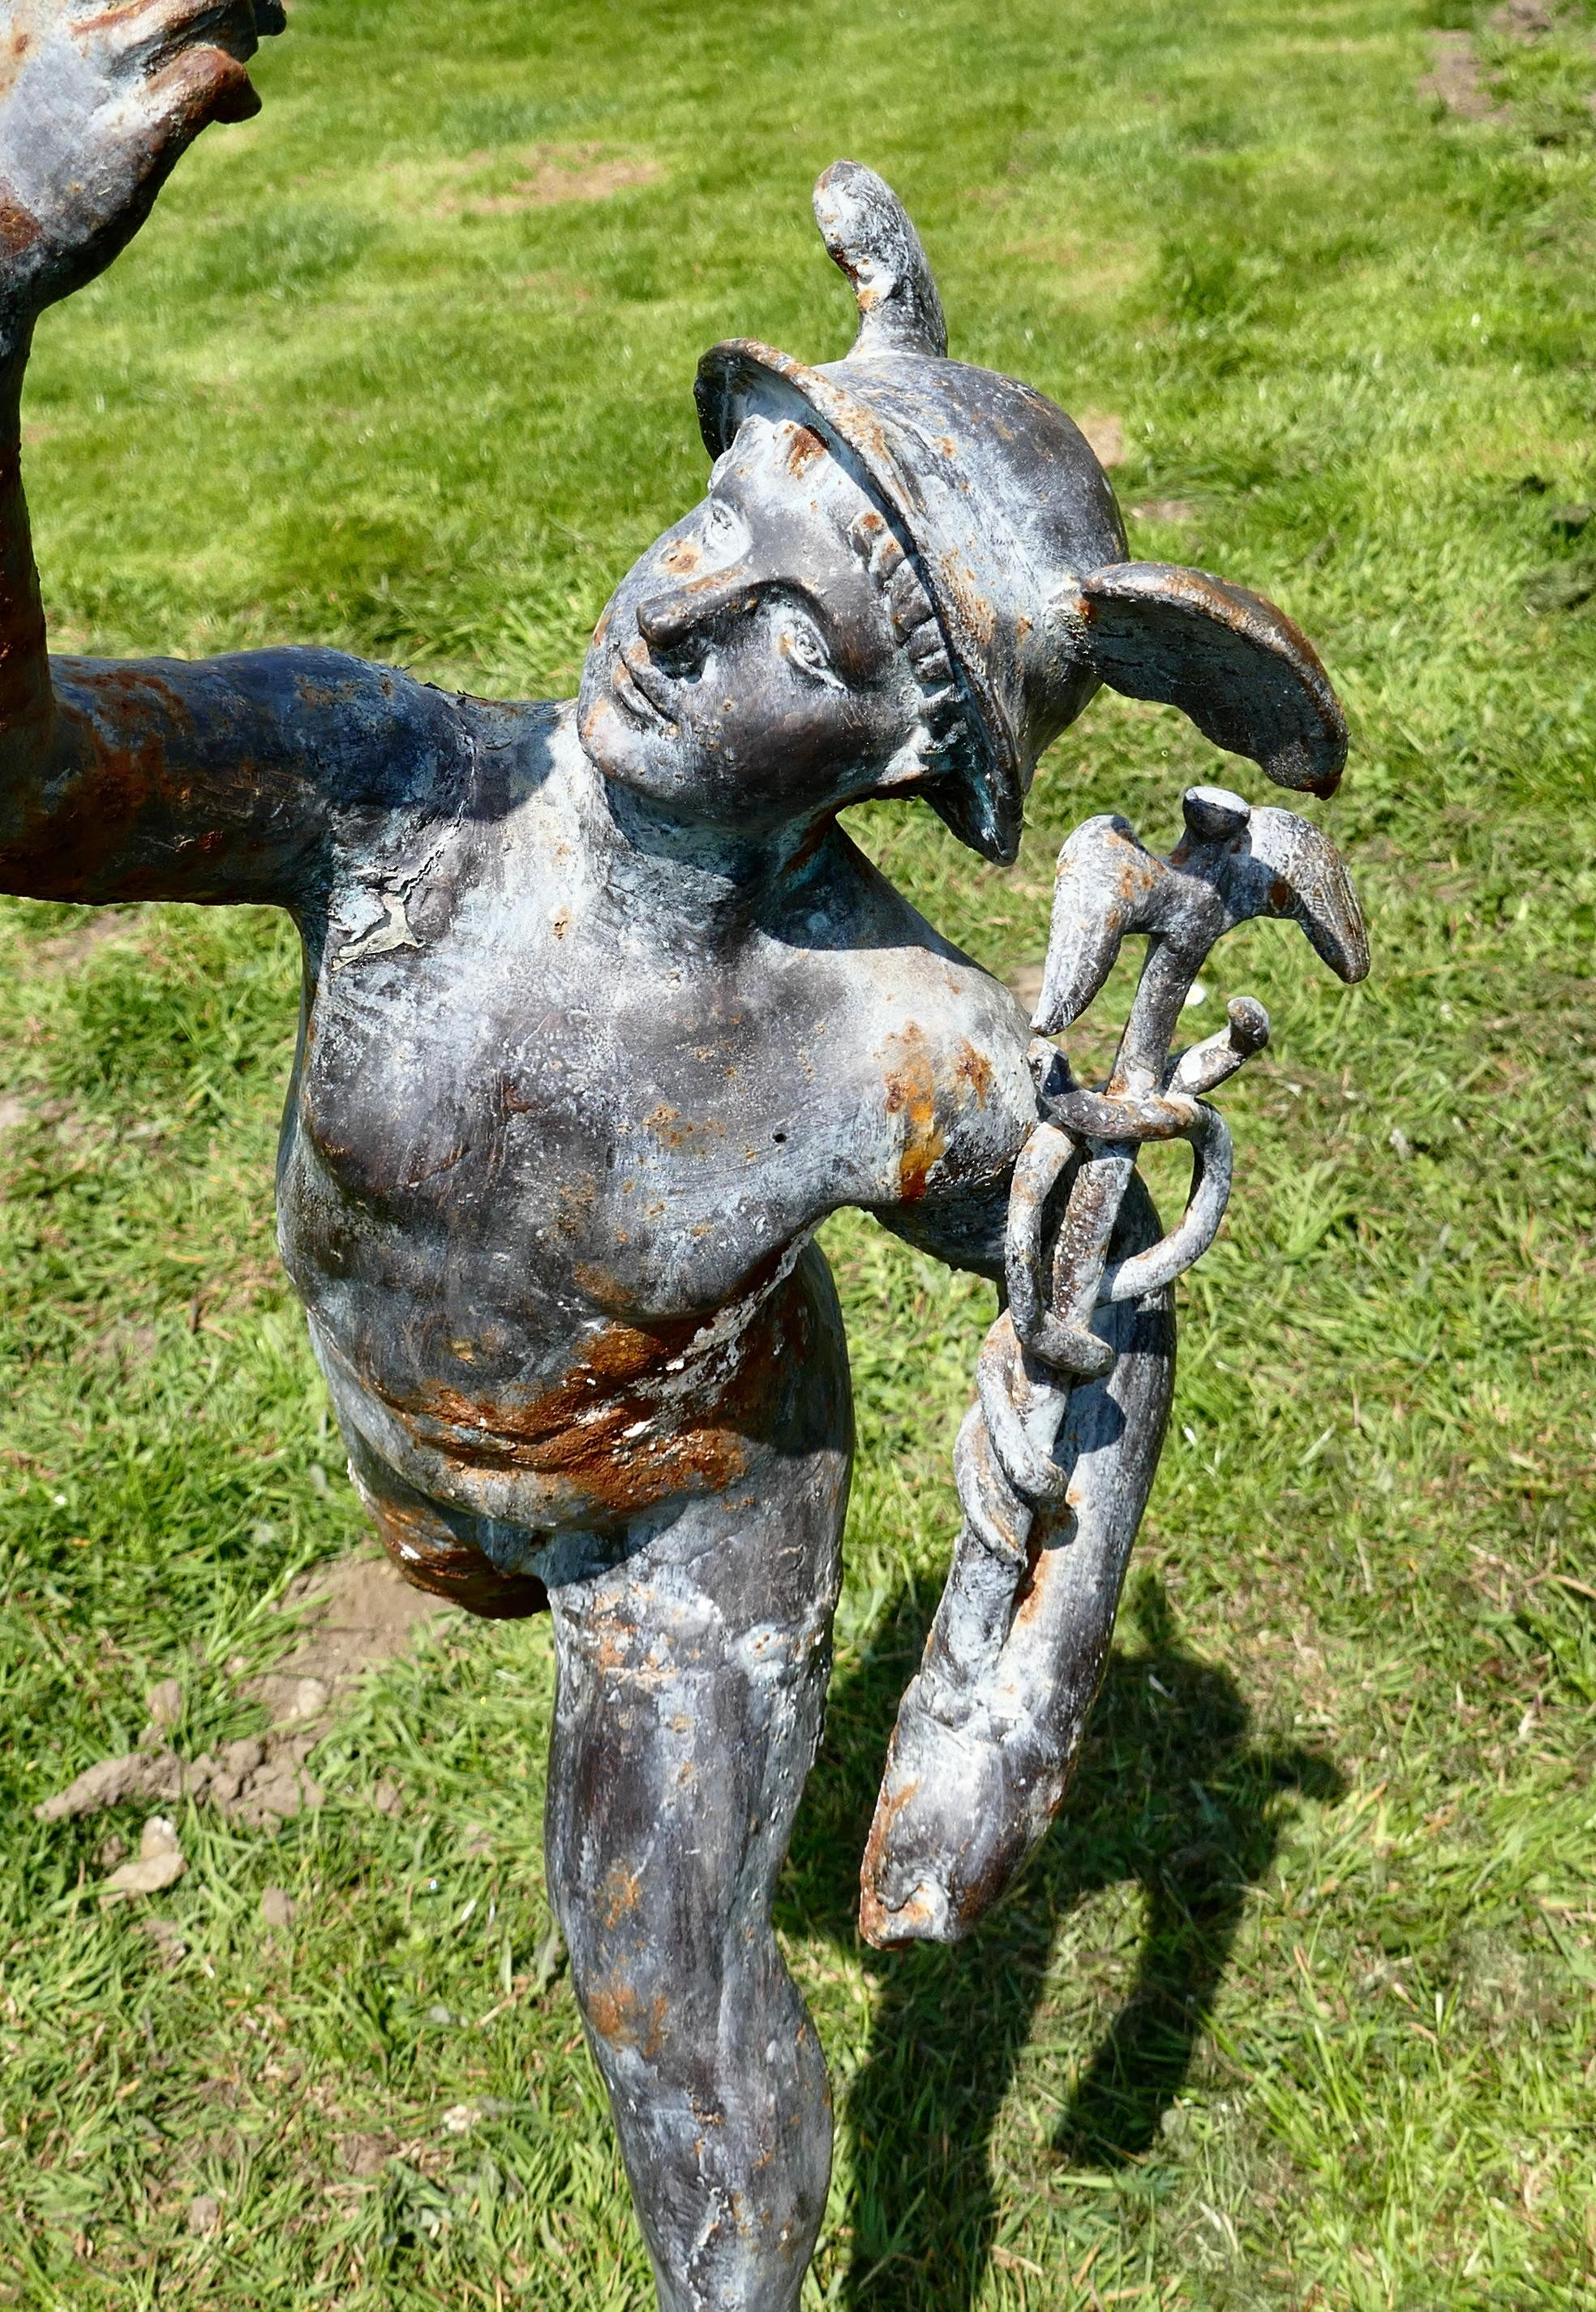 Grande statue de jardin en fer patiné représentant Mercure (Hermès), le messager ailé

La statue est très lourde, elle mesure près d'un mètre de haut et est fabriquée en fer. Elle est restée à l'extérieur pendant de nombreuses années, elle a une